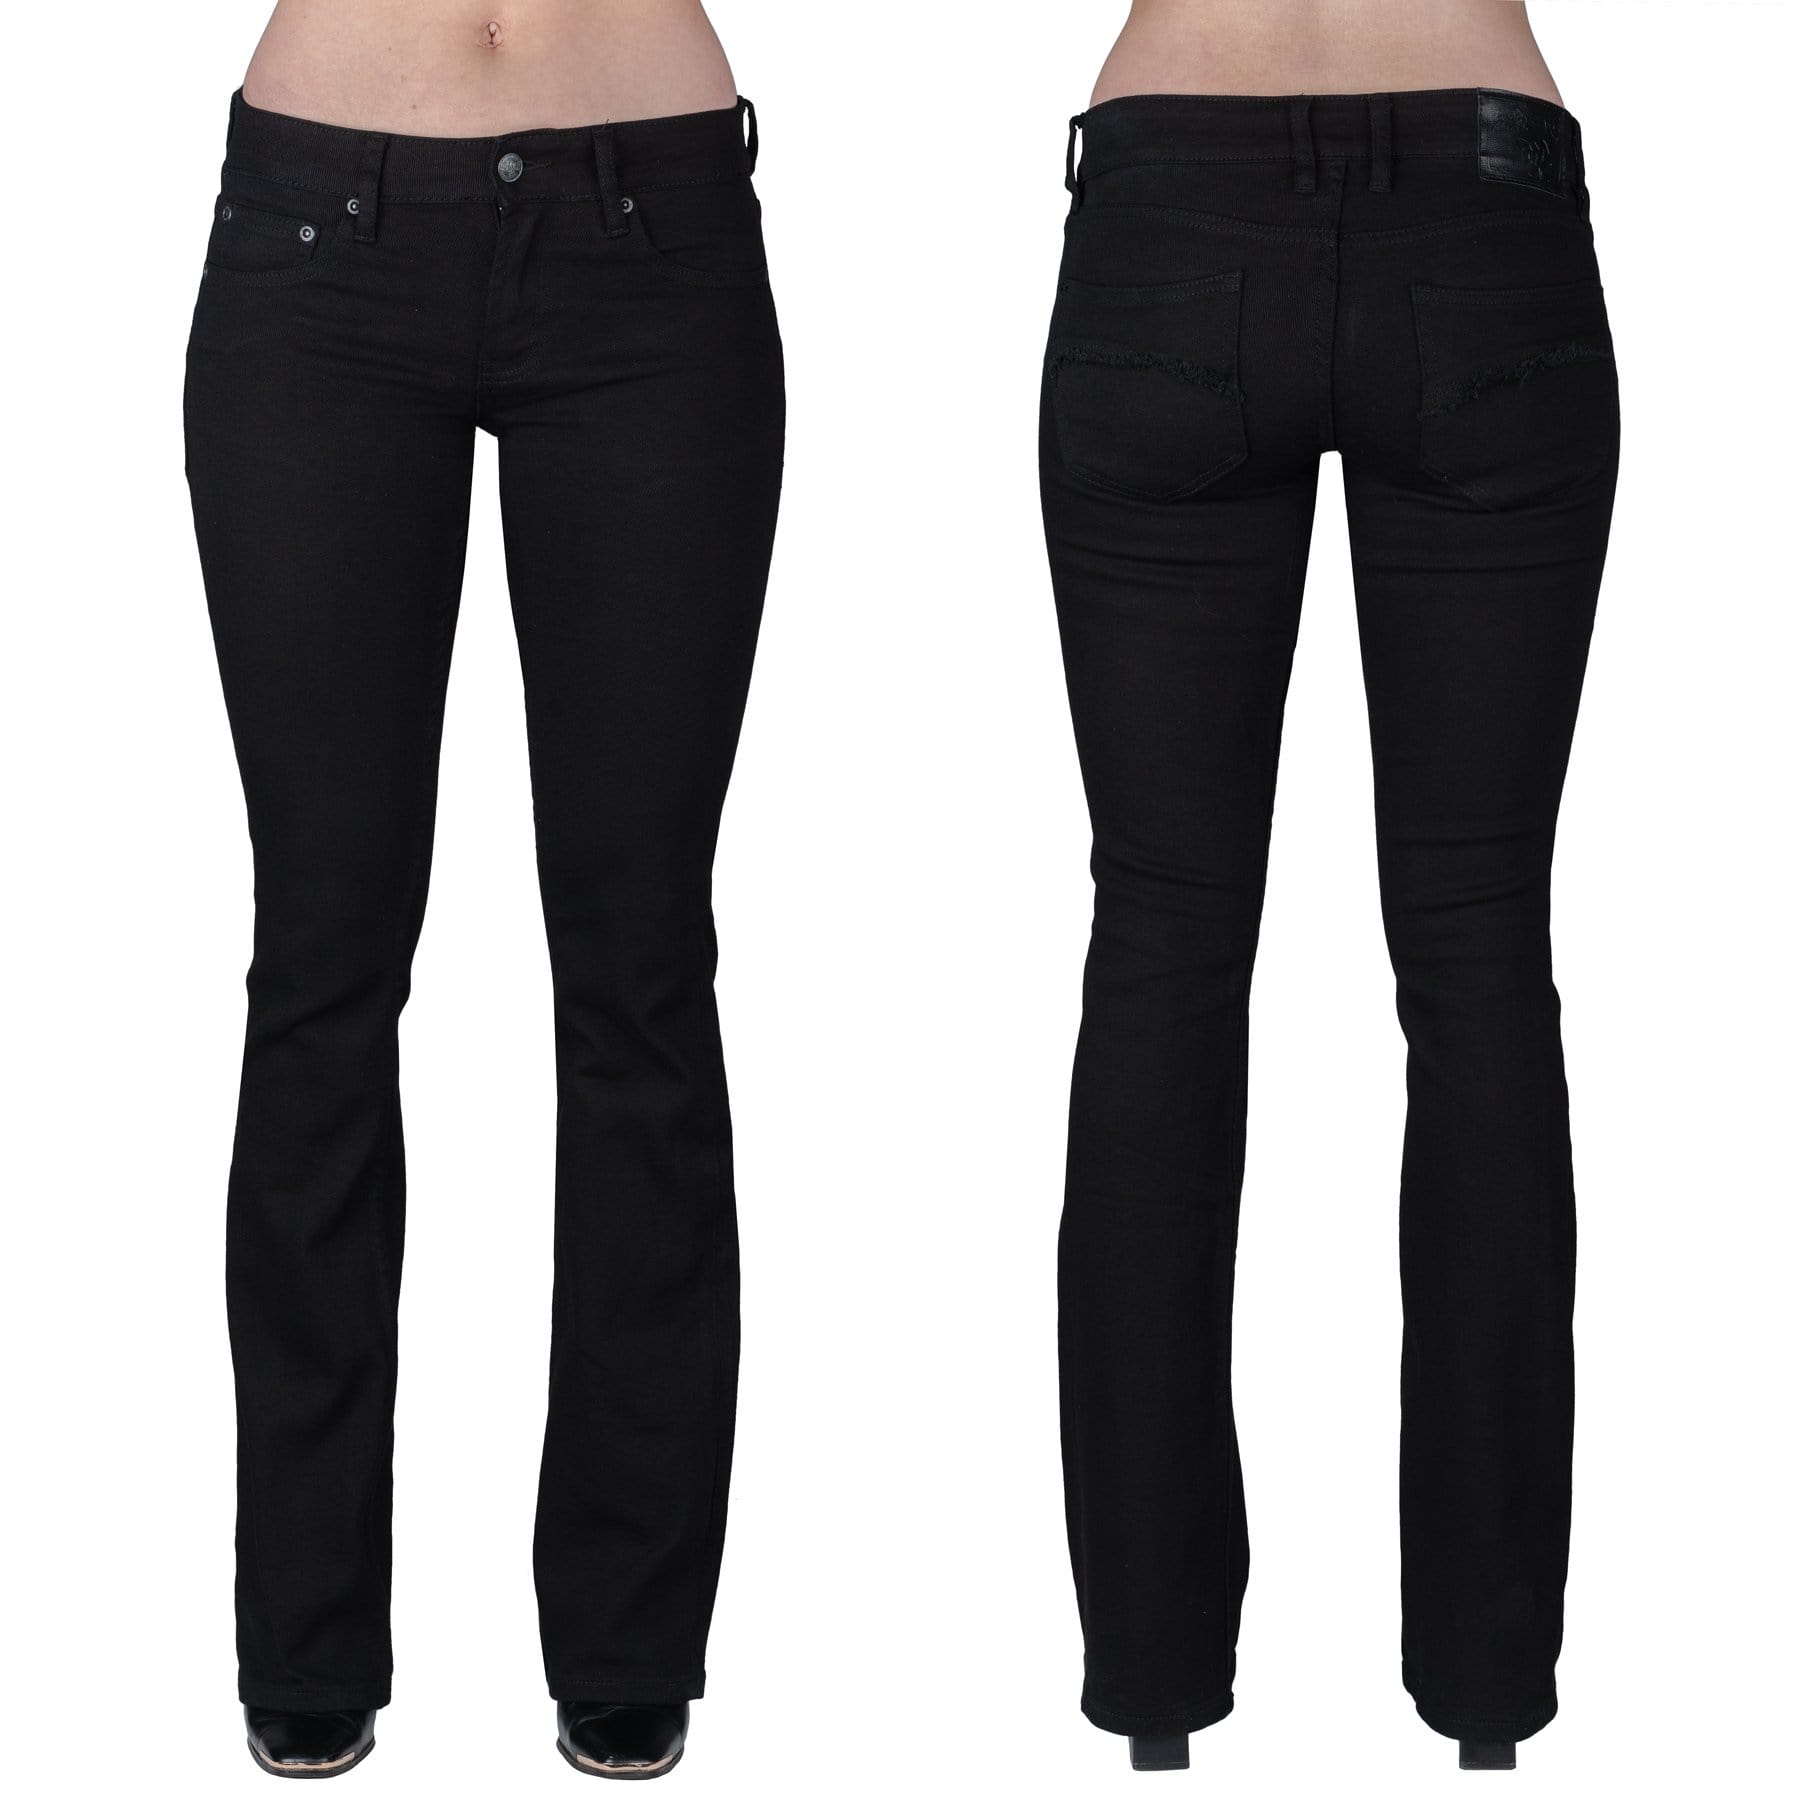 Wardrobe Black Bootcut Trousers, Women's Black Bootcut Pants